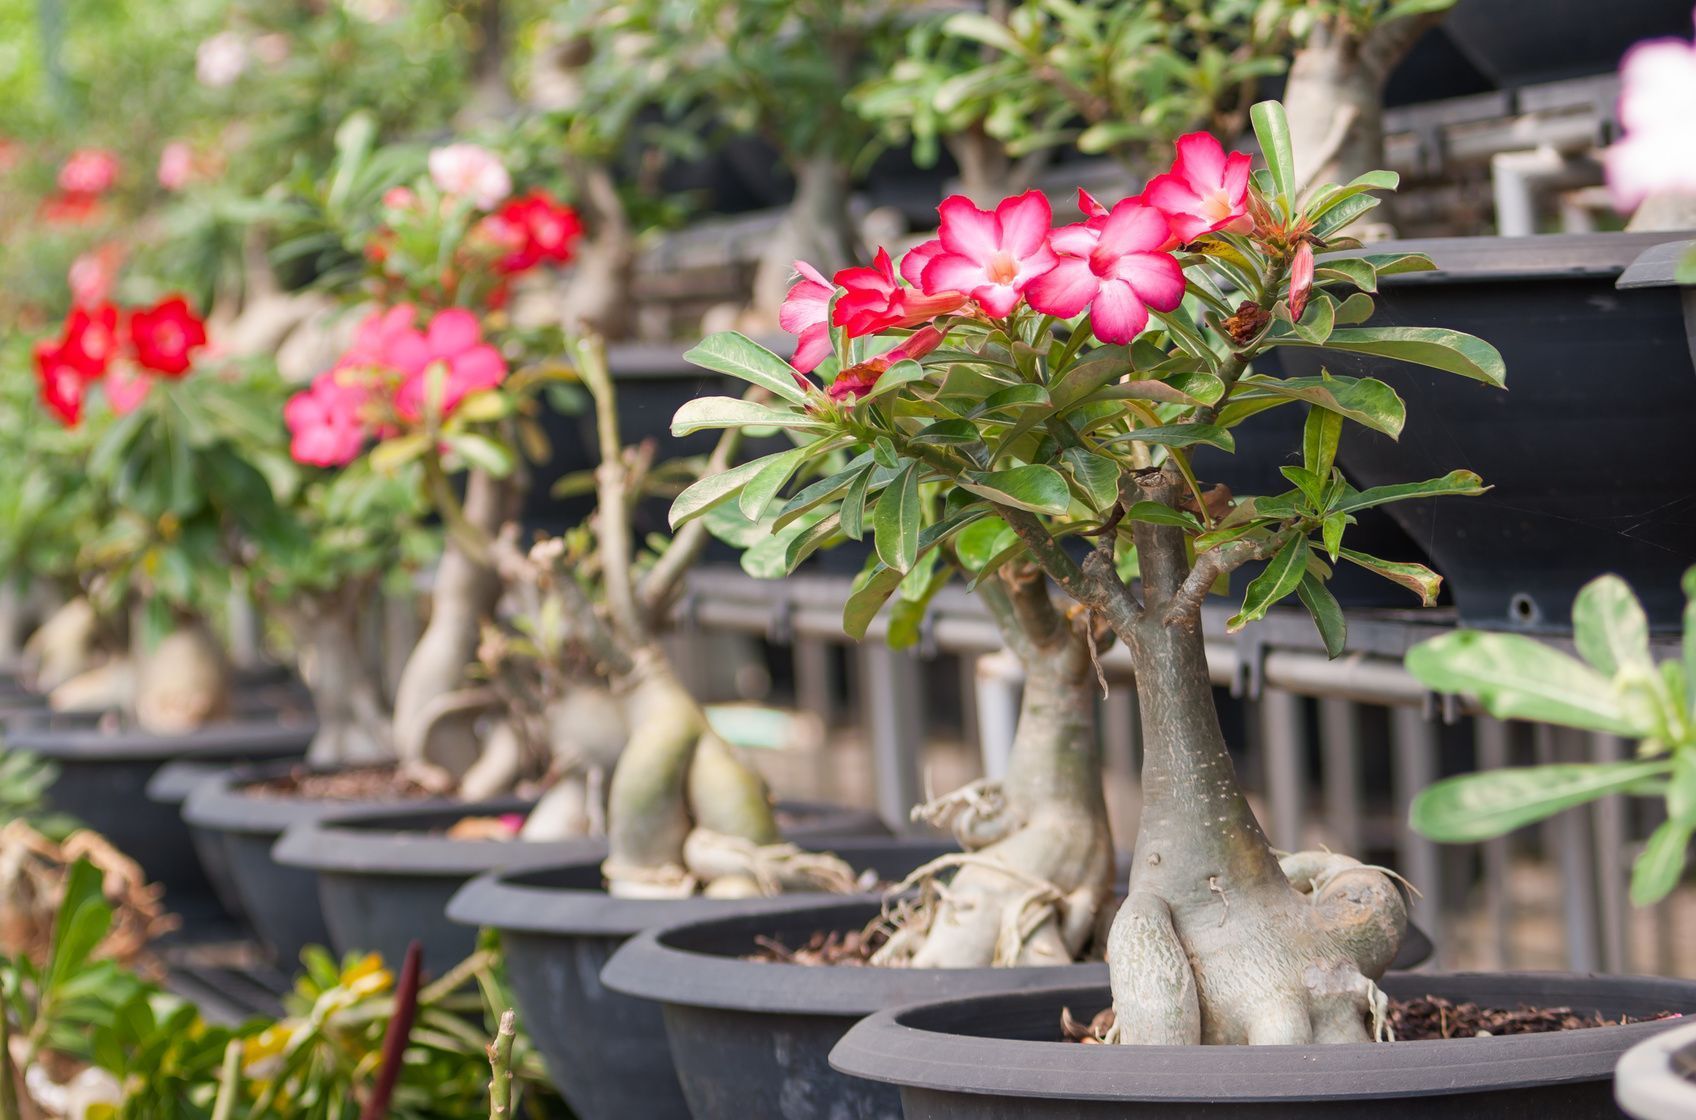 Die Wüstenrose benötigt als Zimmerpflanze einen hellen und warmen Platz, um zu gedeihen.